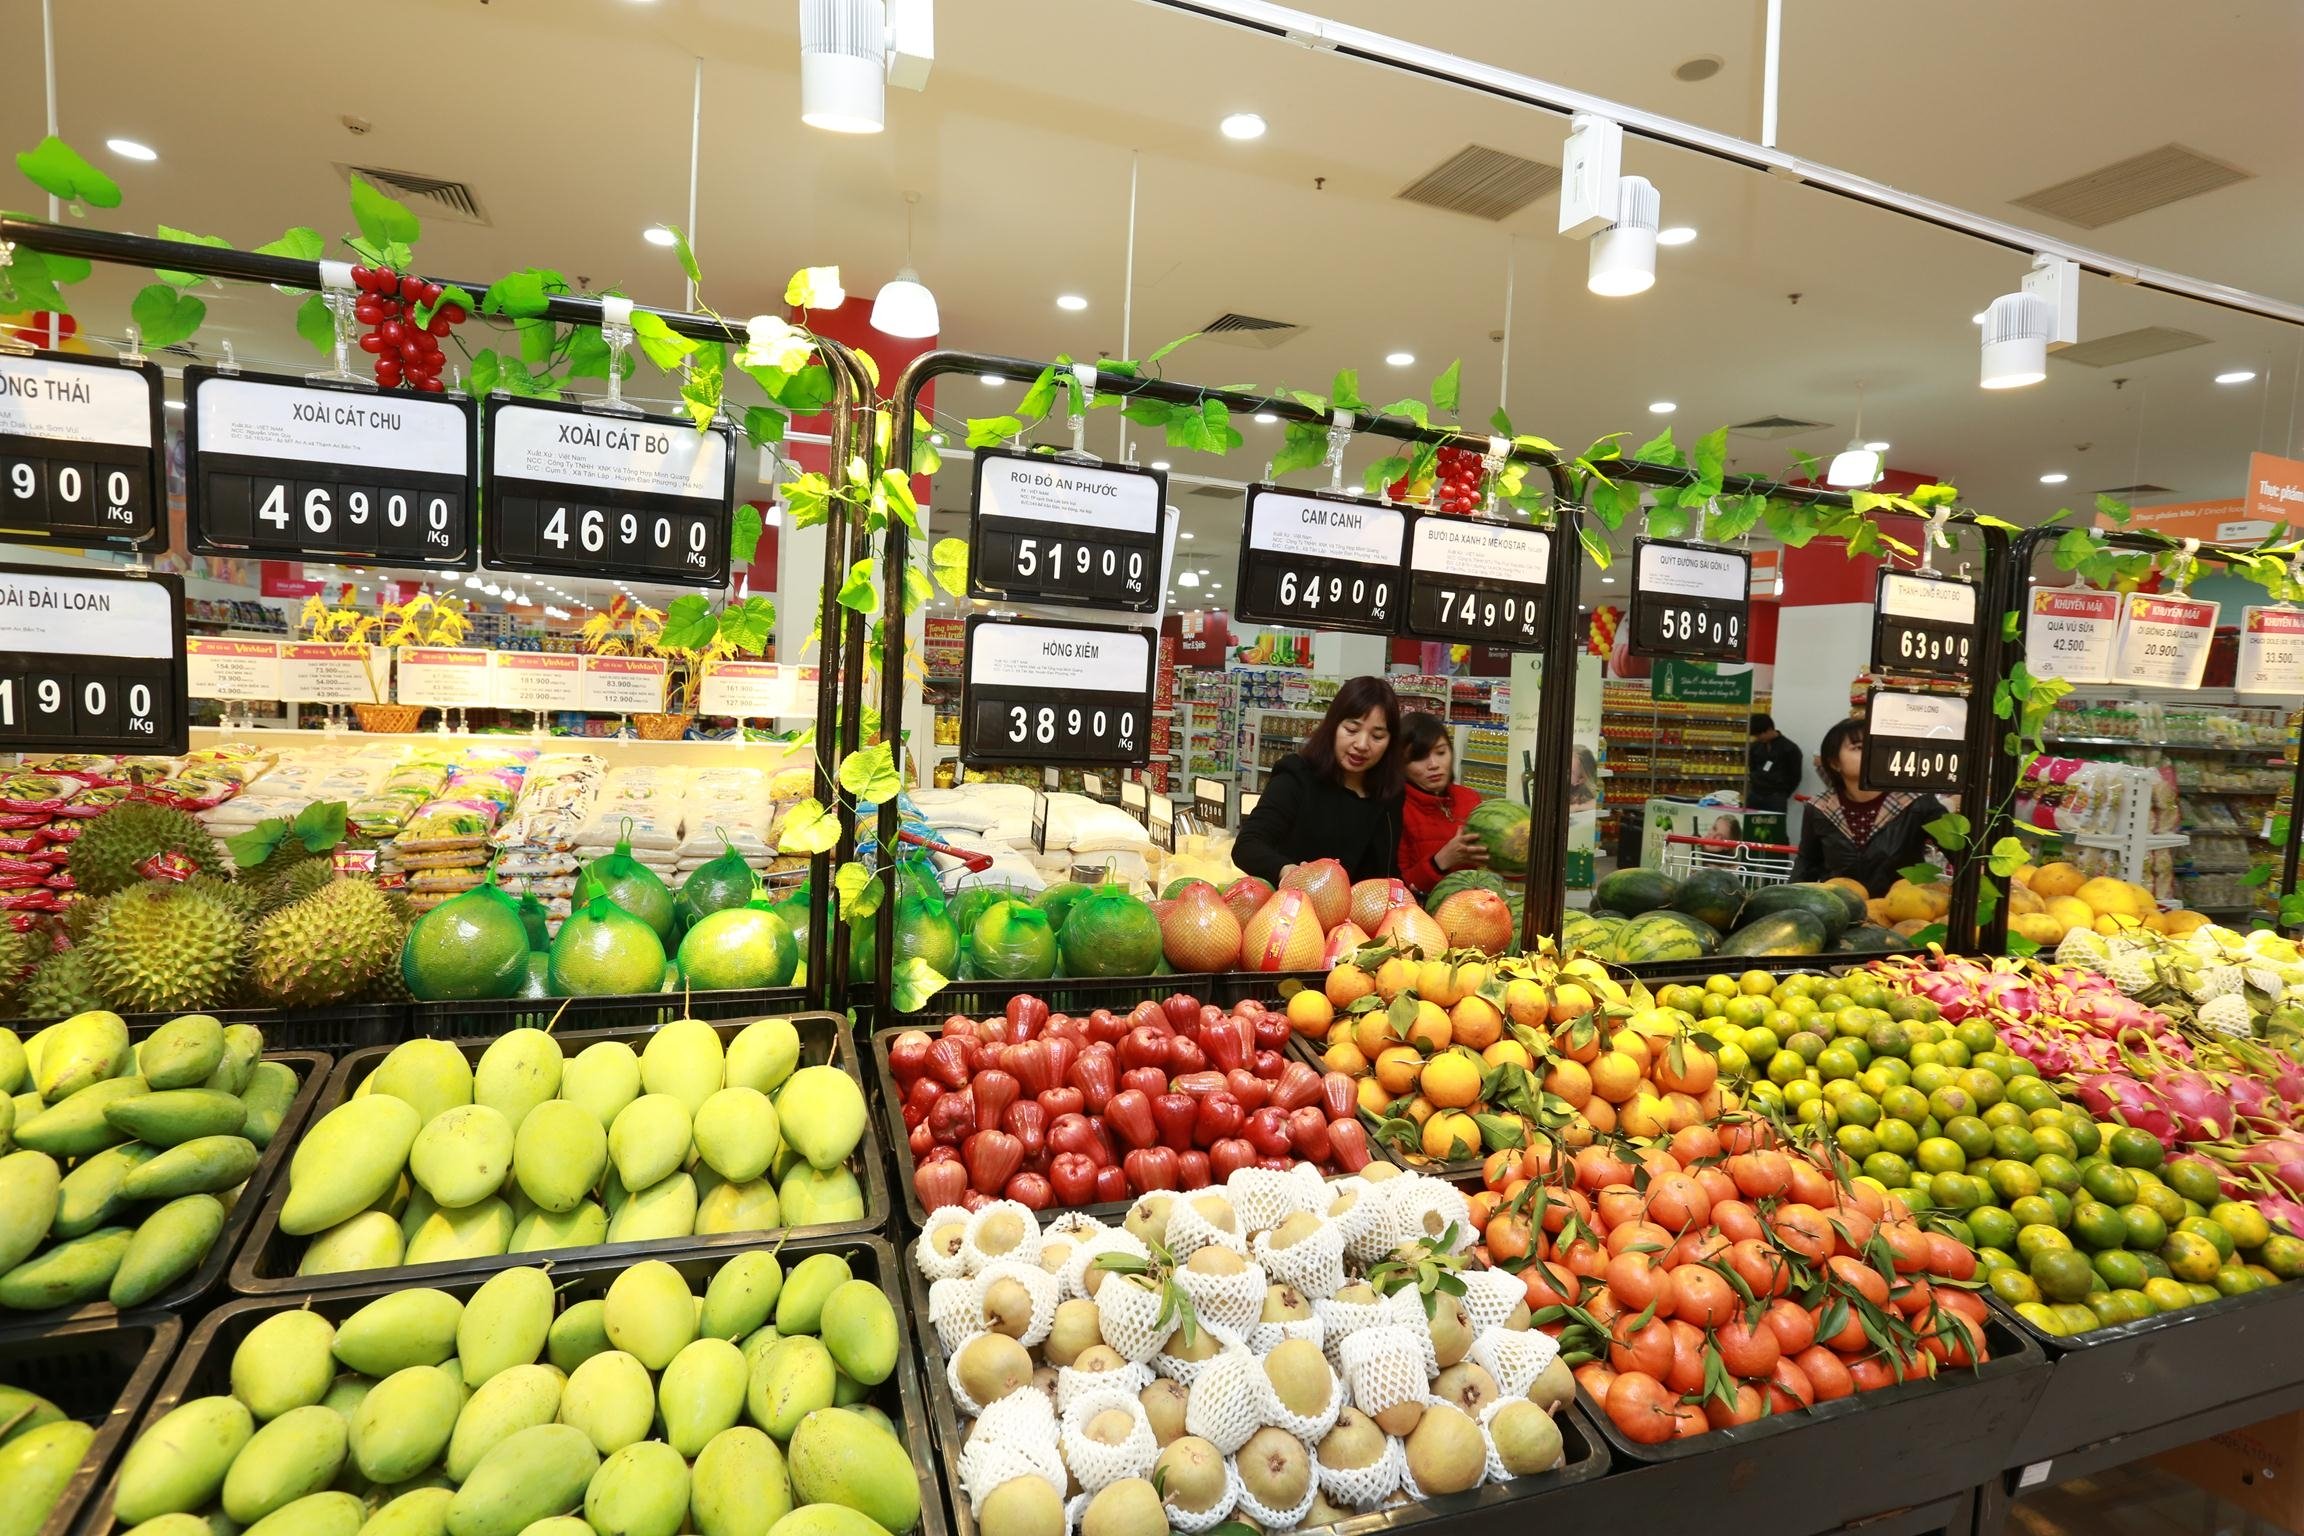 Quả roi đỏ được bày bán tại hệ thống siêu thị, cửa hàng trái cây